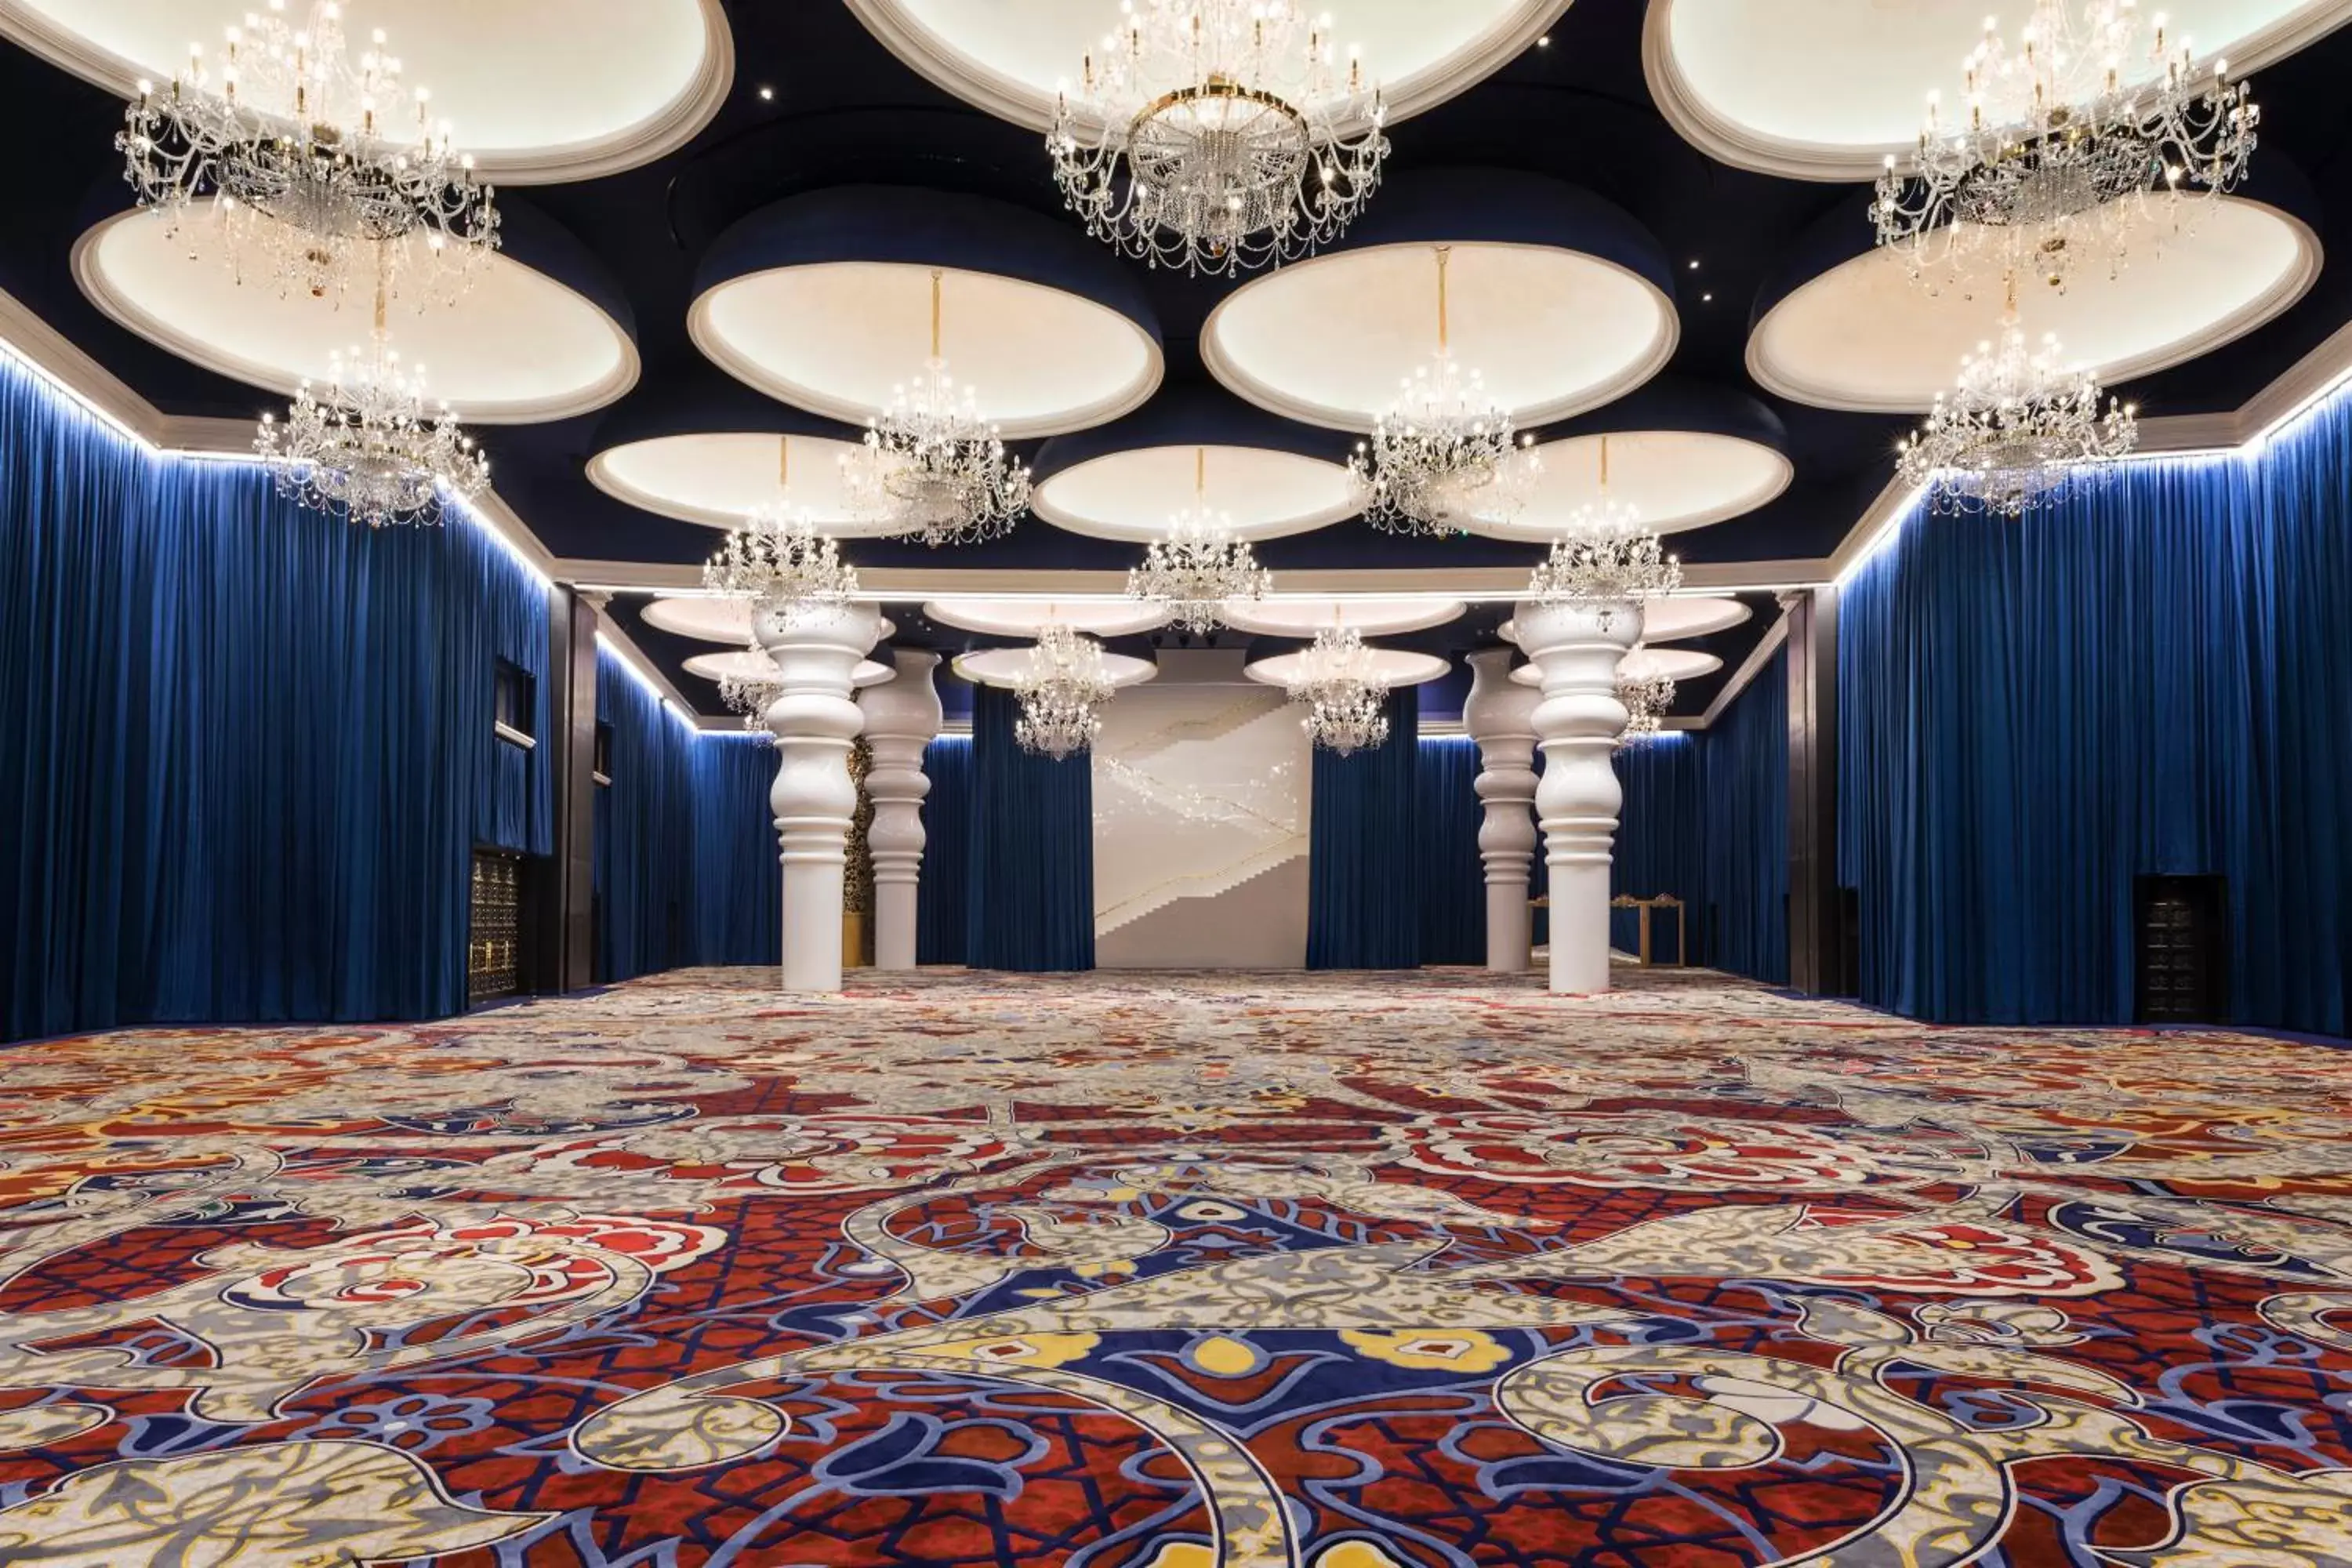 Banquet/Function facilities, Banquet Facilities in Mondrian Doha